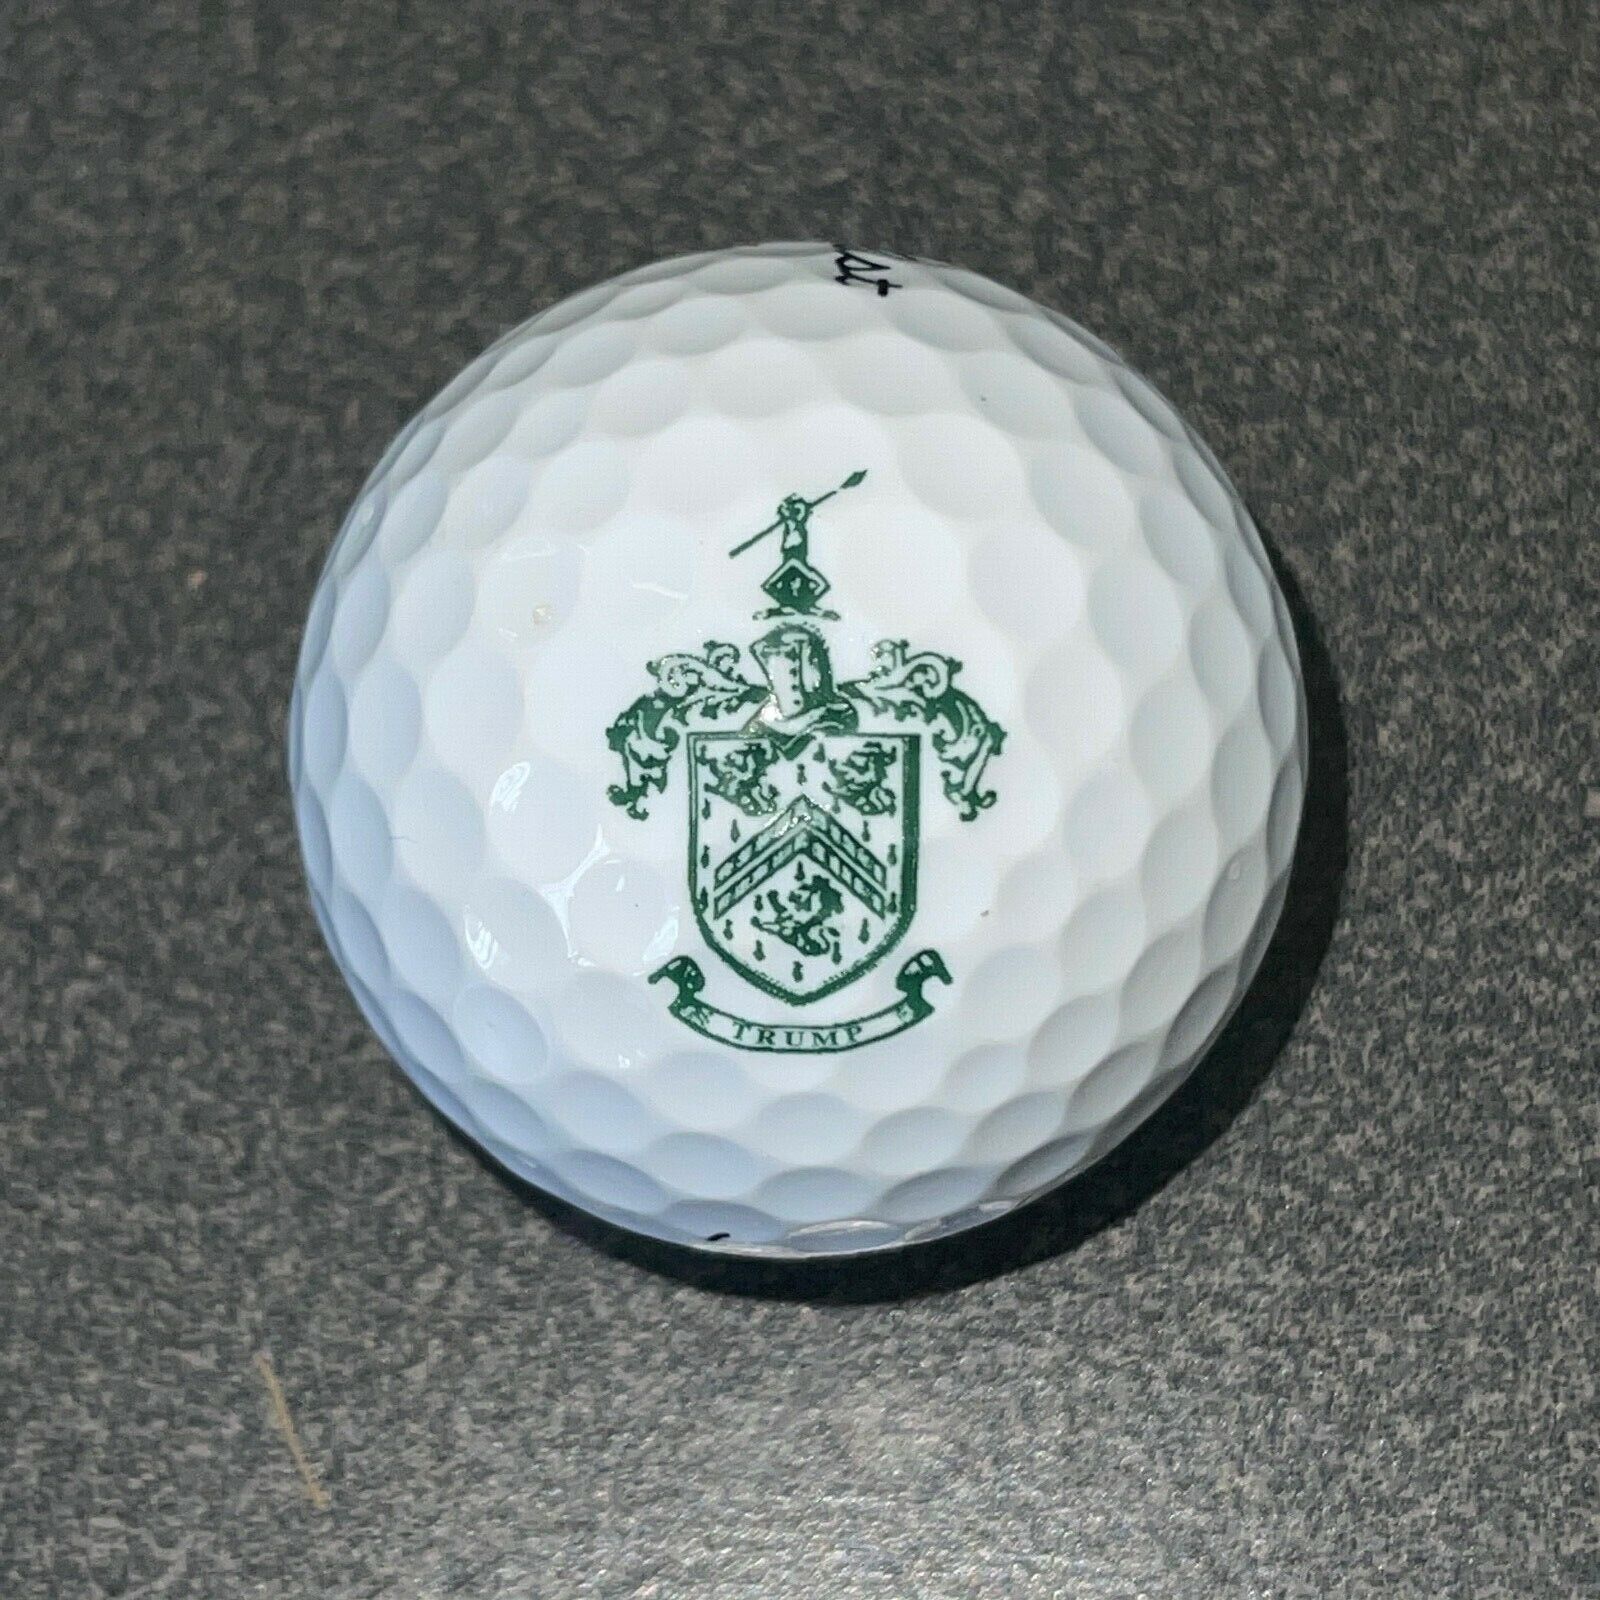 1 Green Trump Crest Logo Golf Ball F-12-9